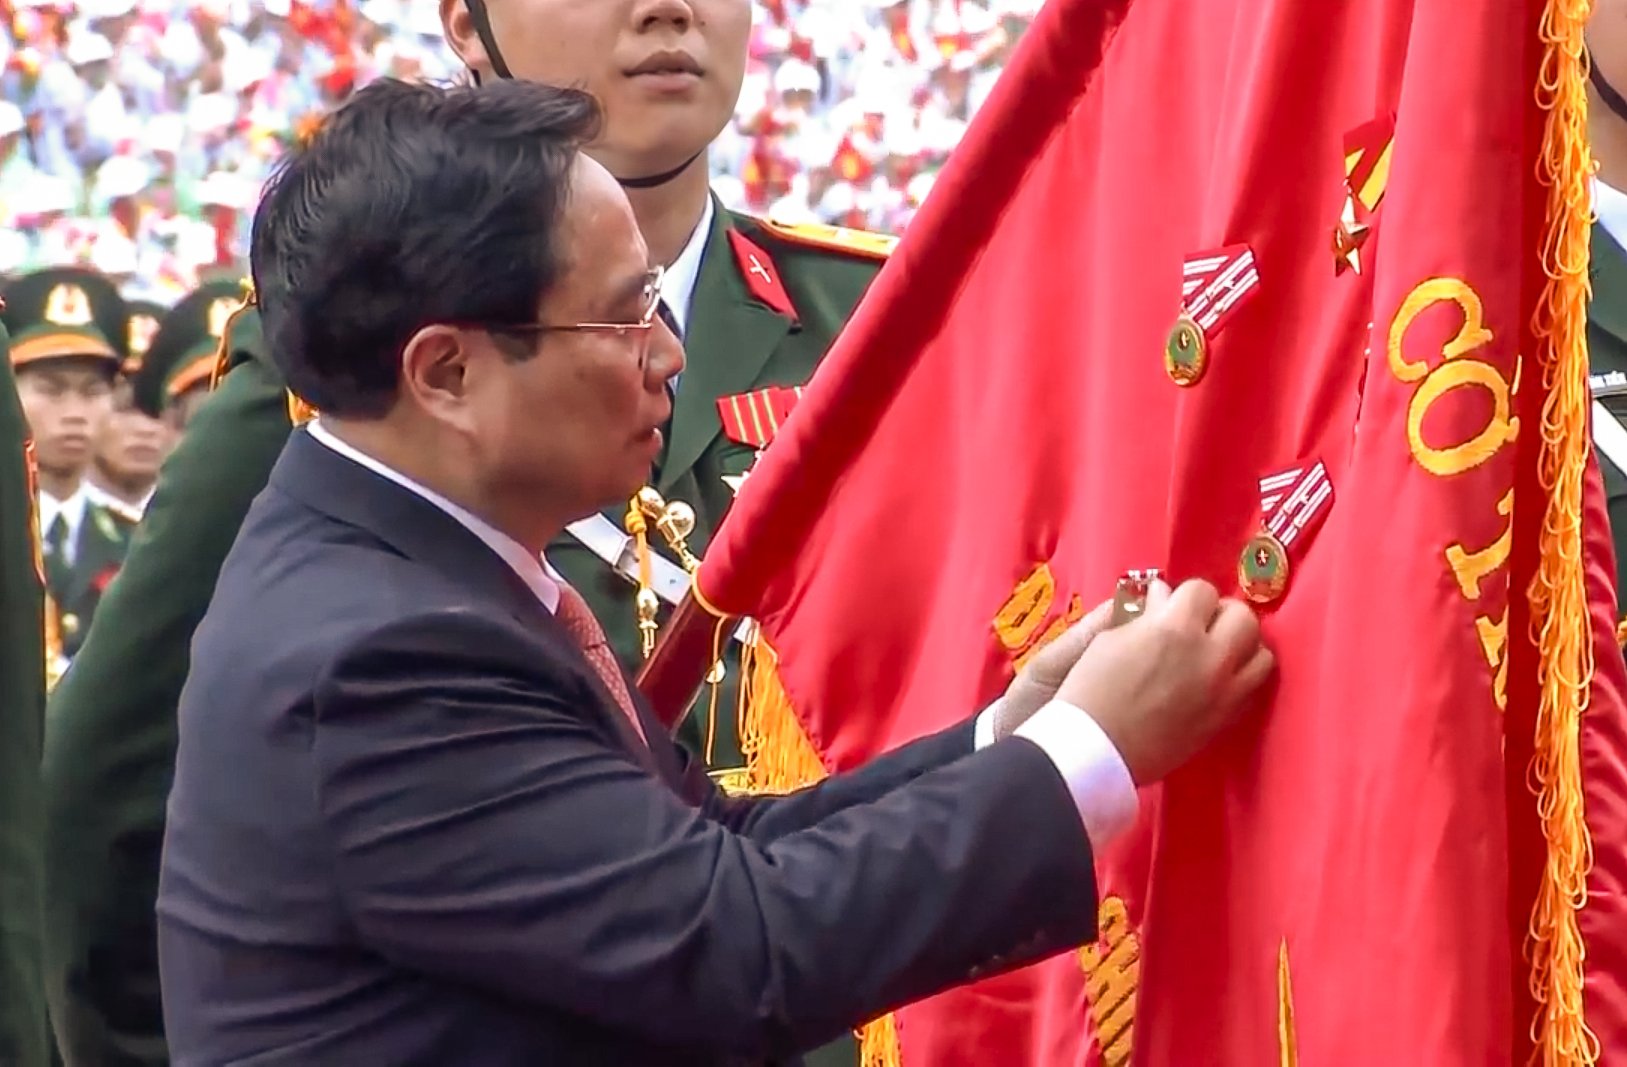 Tại Lễ kỷ niệm, Thủ tướng Chính phủ Phạm Minh Chính thay mặt lãnh đạo Đảng, Nhà nước trao Huân chương Độc lập hạng Nhất cho Đảng bộ, chính quyền và Nhân dân các dân tộc tỉnh Điện Biên.